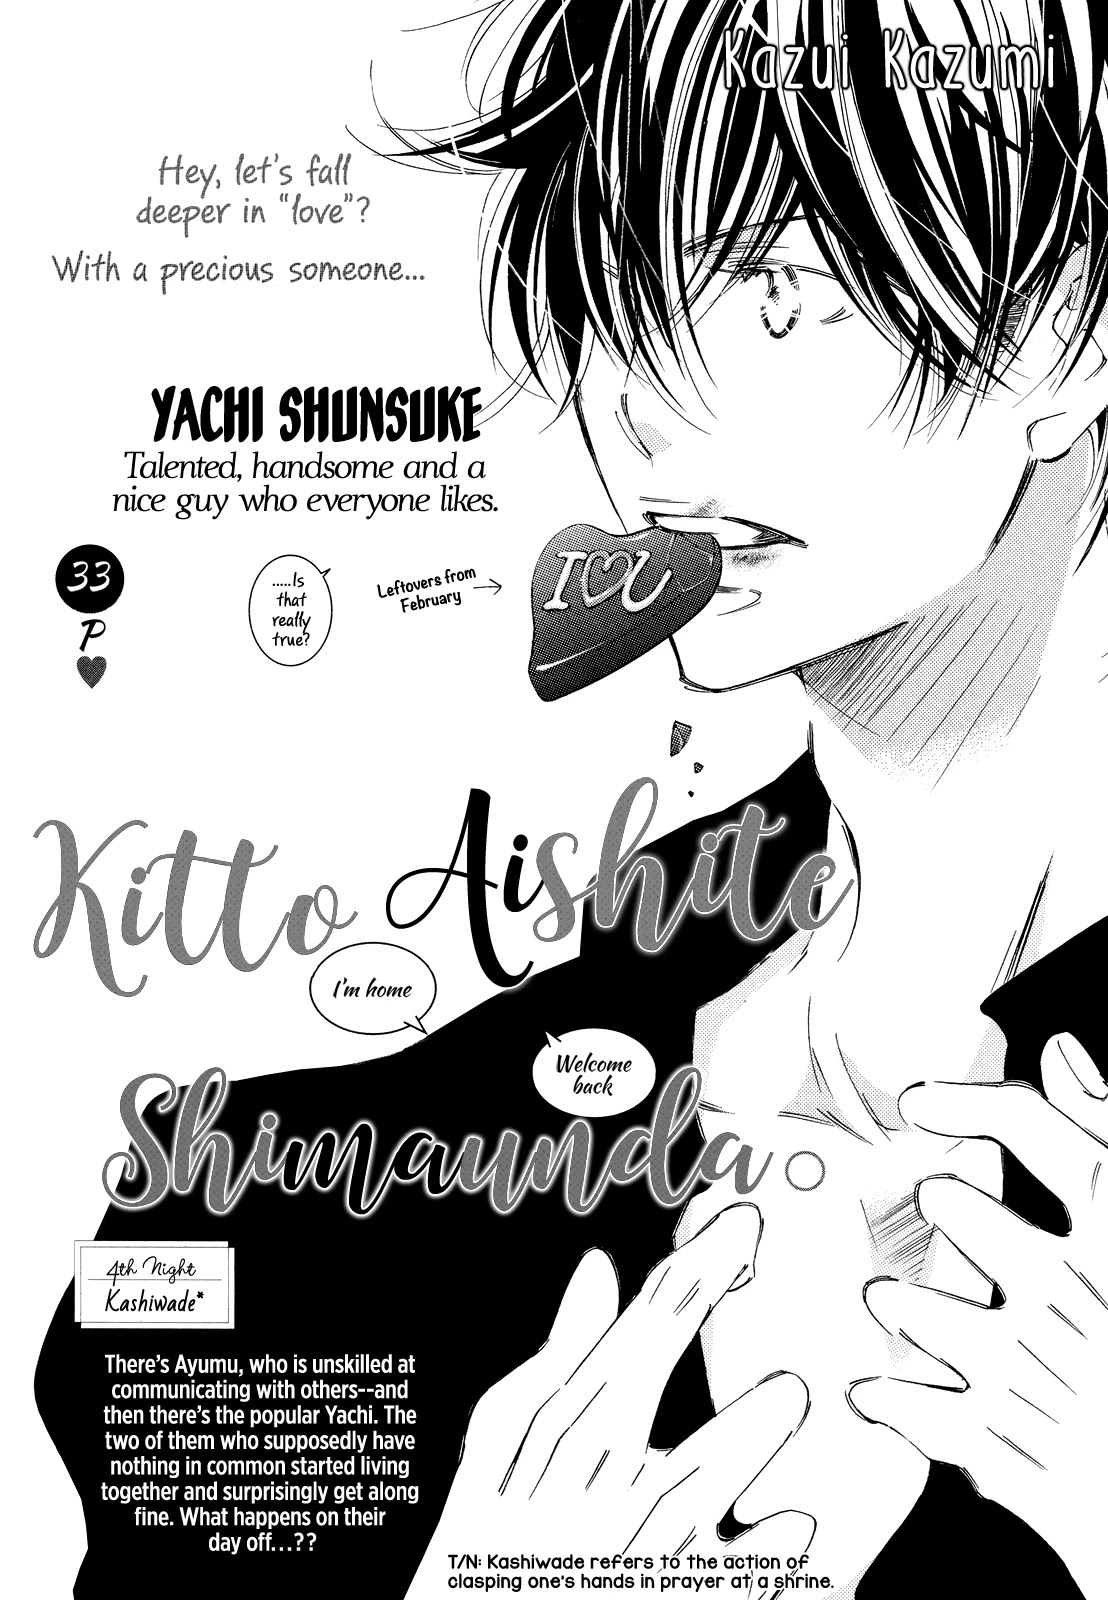 Kitto Aishite Shimau N Da. - Page 2